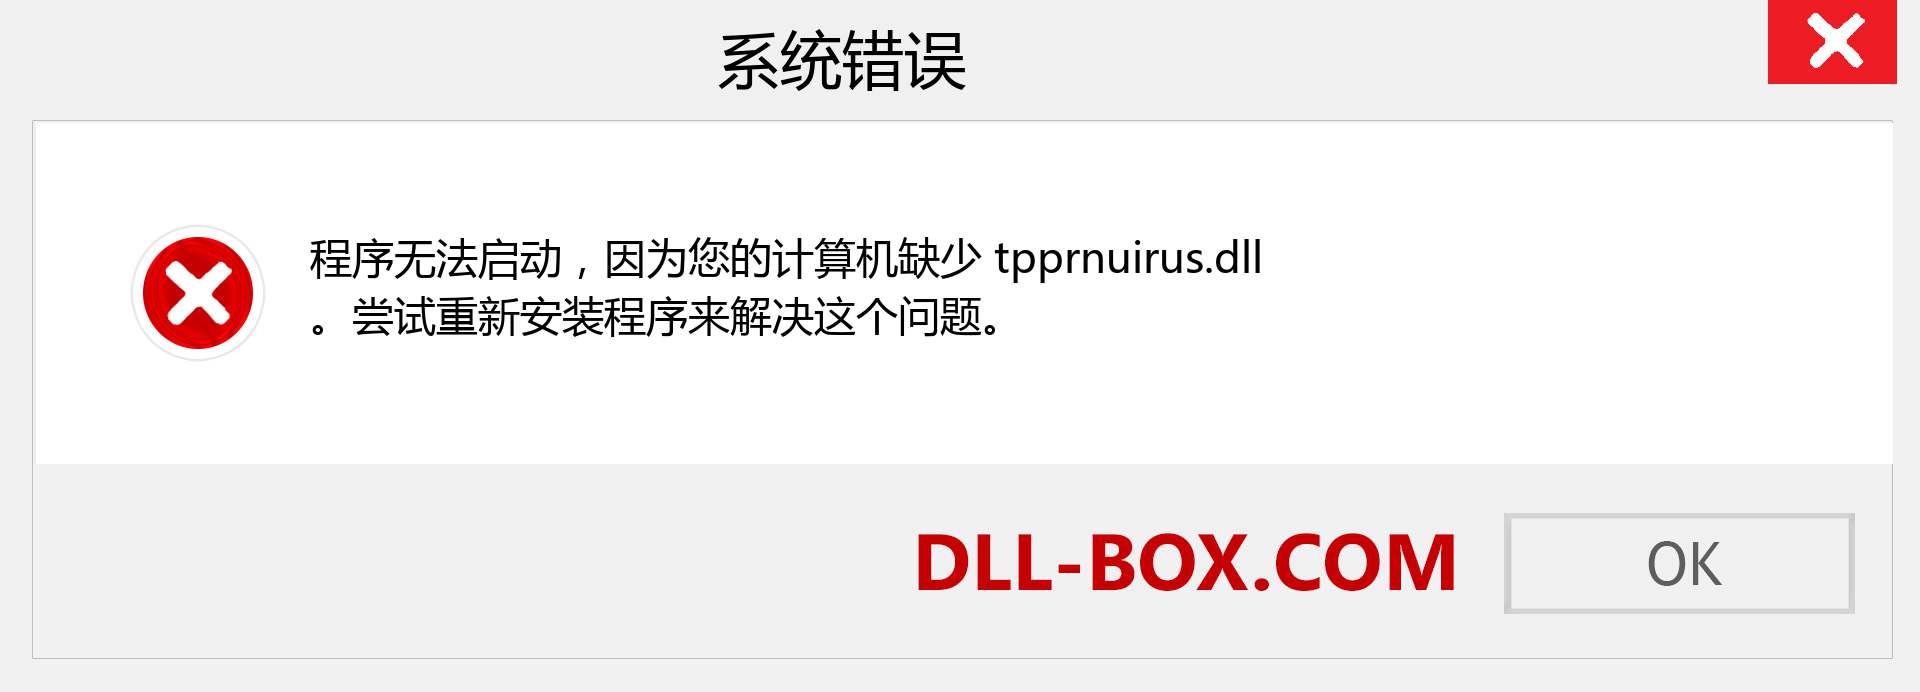 tpprnuirus.dll 文件丢失？。 适用于 Windows 7、8、10 的下载 - 修复 Windows、照片、图像上的 tpprnuirus dll 丢失错误